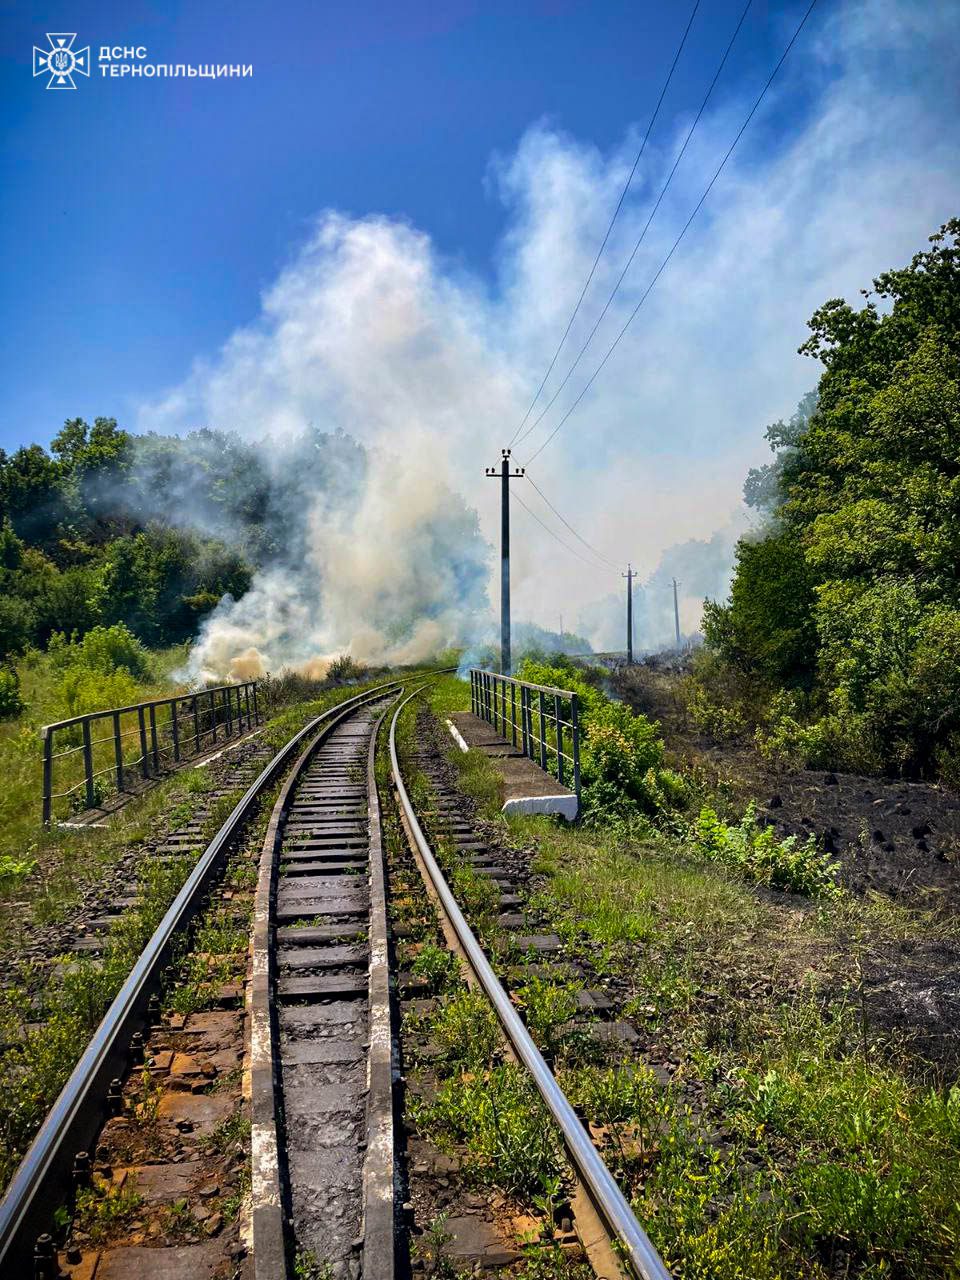 Пожежа у Копичинцях: уздовж залізничної колії горіли чагарники